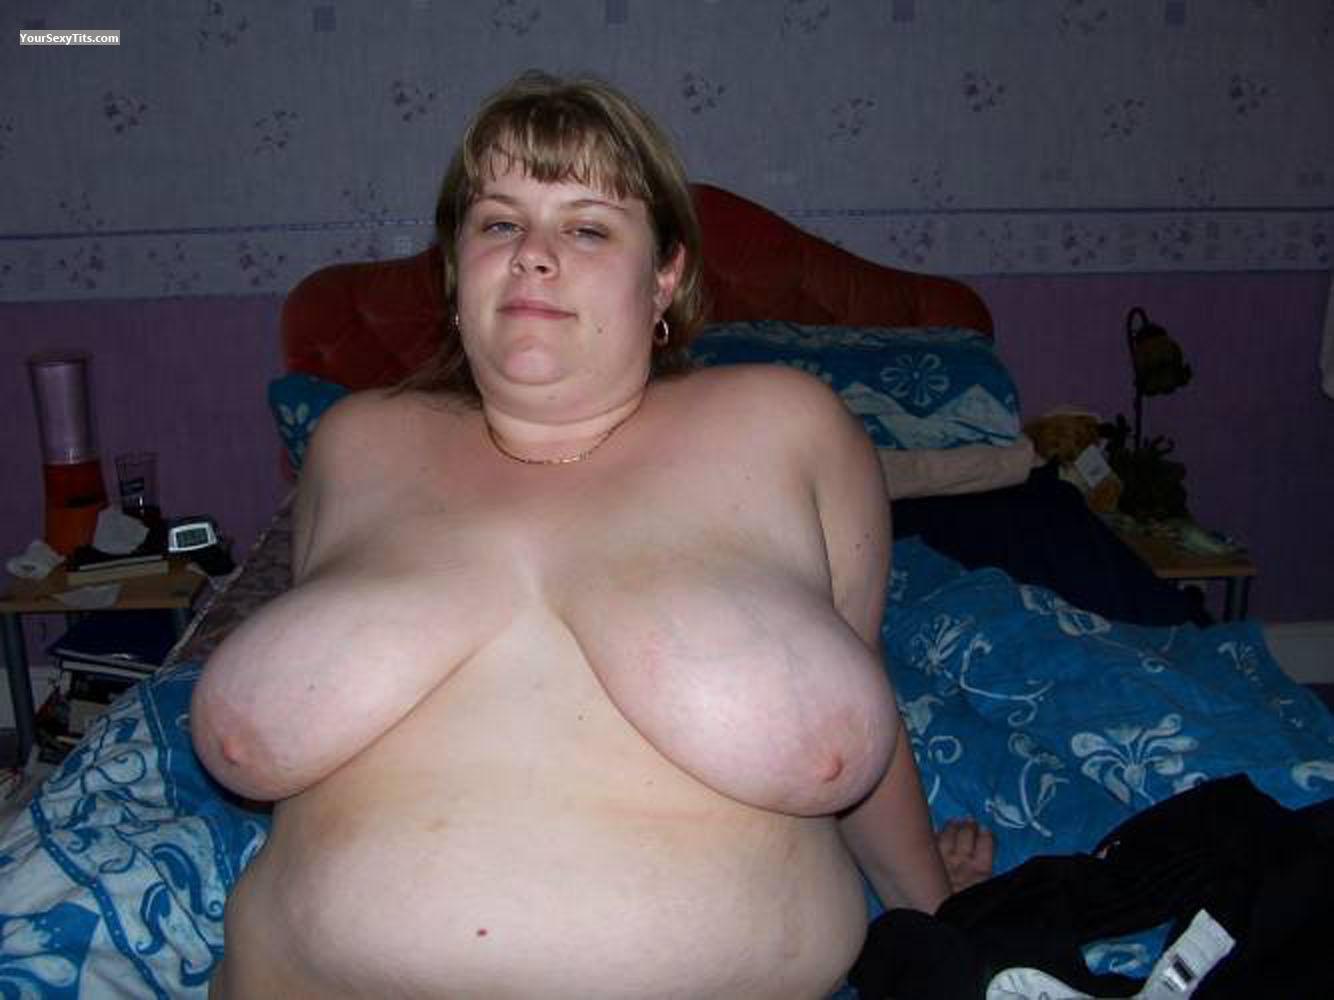 Tit Flash: My Big Tits - Topless Samantha from United Kingdom